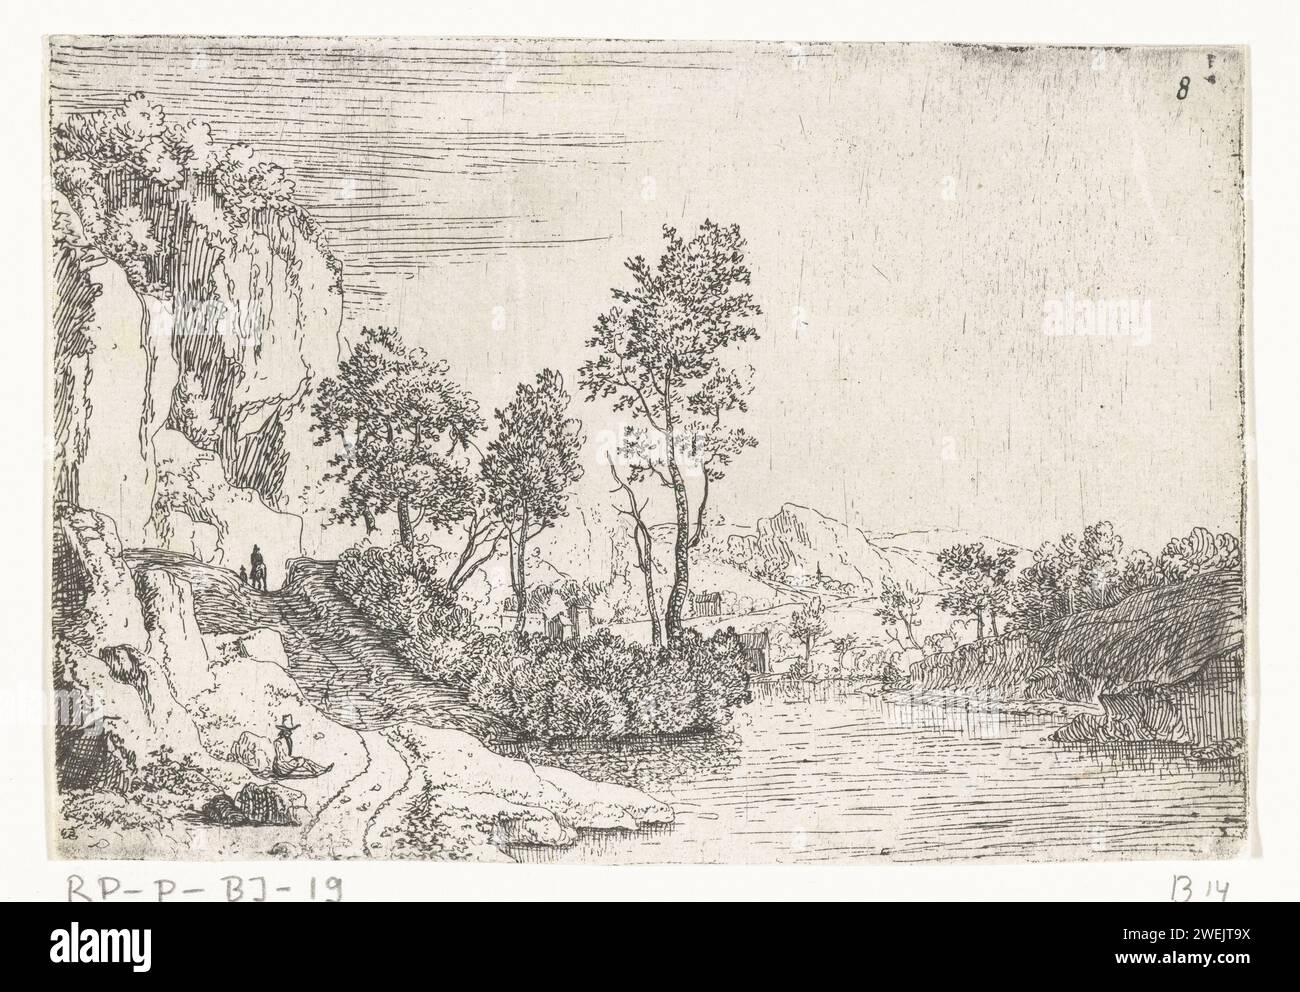 Paesaggio fluviale con rocce e uomo riposante, Jan van Aken, 1640 - 1670 stampa di carta che incide paesaggi con acque, paesaggi acquatici, paesaggi marini (nella zona temperata) Foto Stock